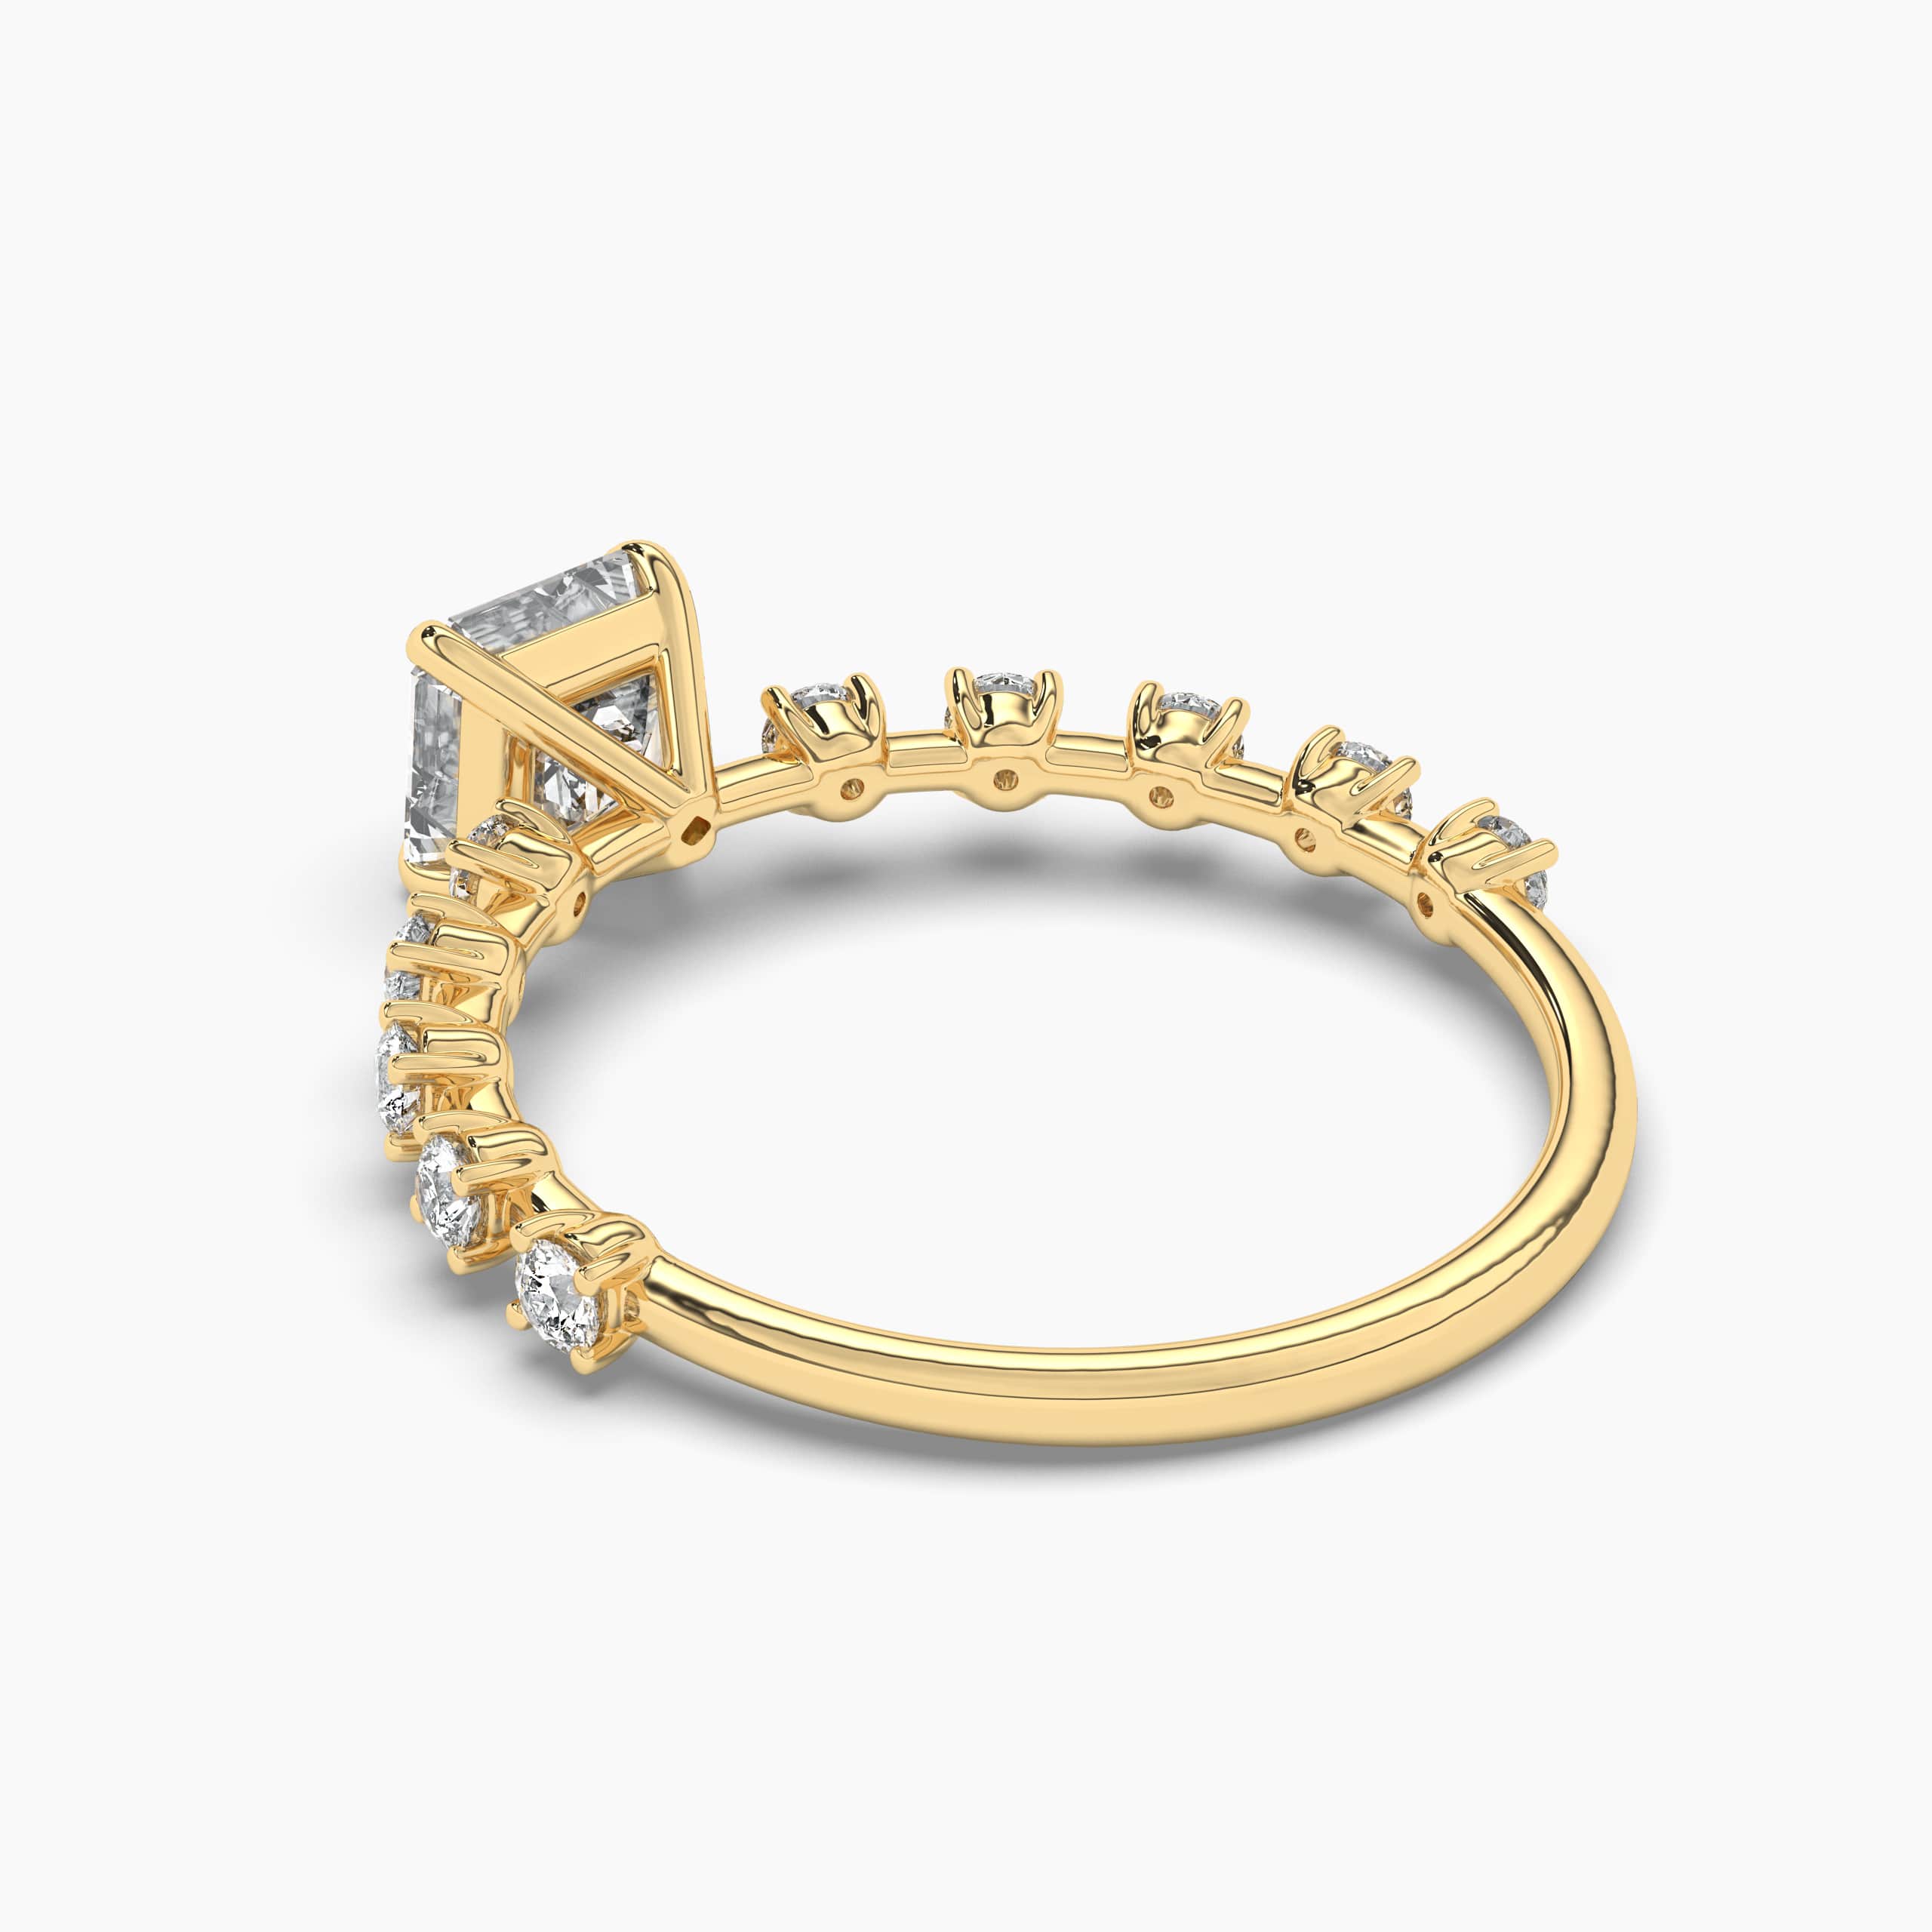 Asscher diamond engagement ring set in yellow gold